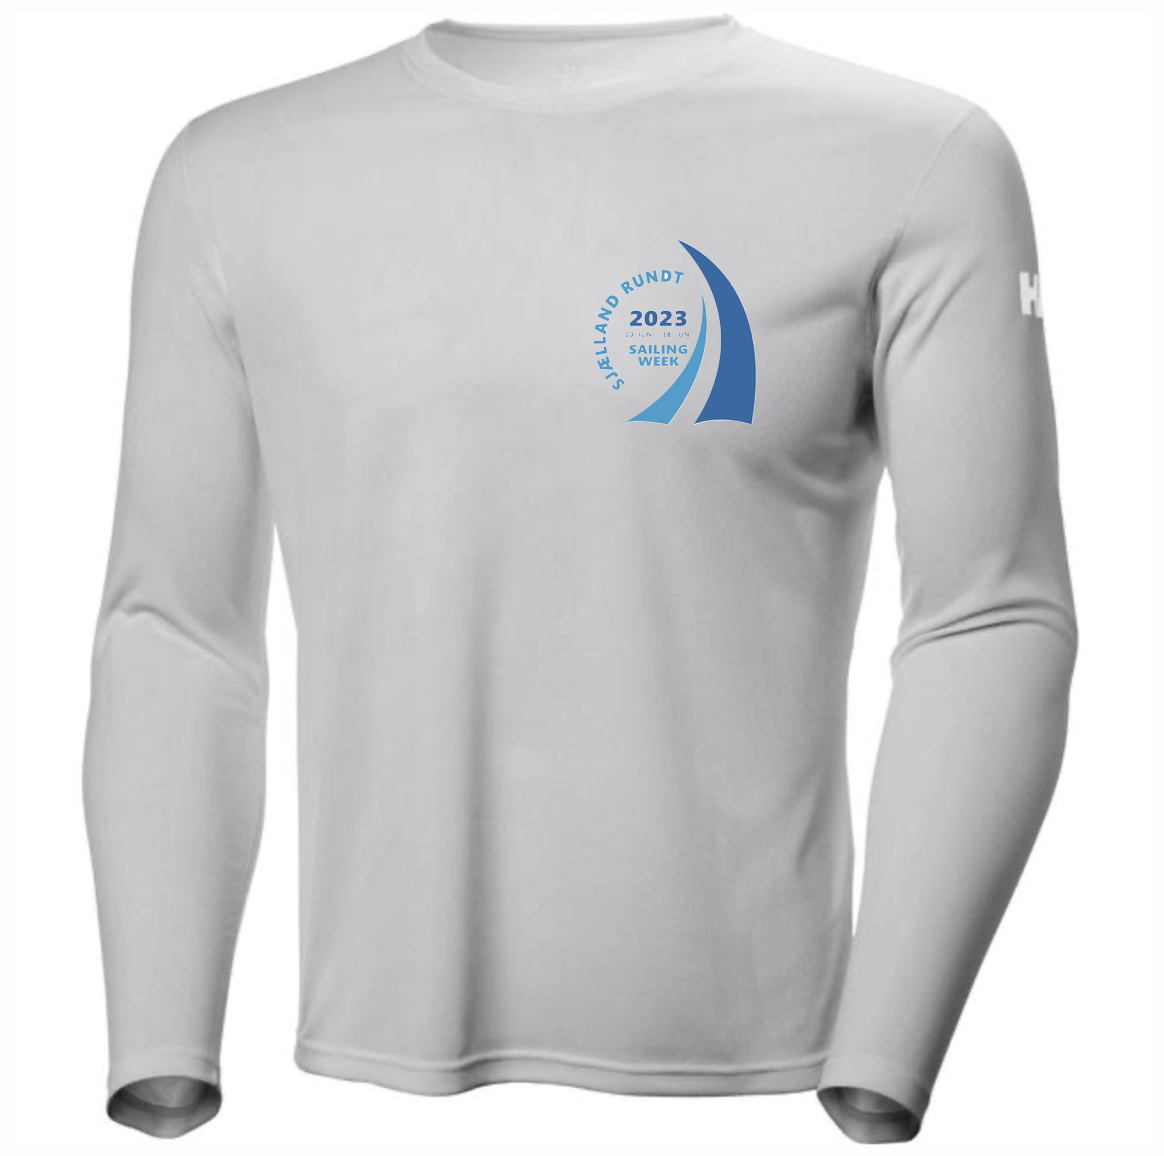 Støt SRSW: Køb den officielle HH Technical shirt til din båd